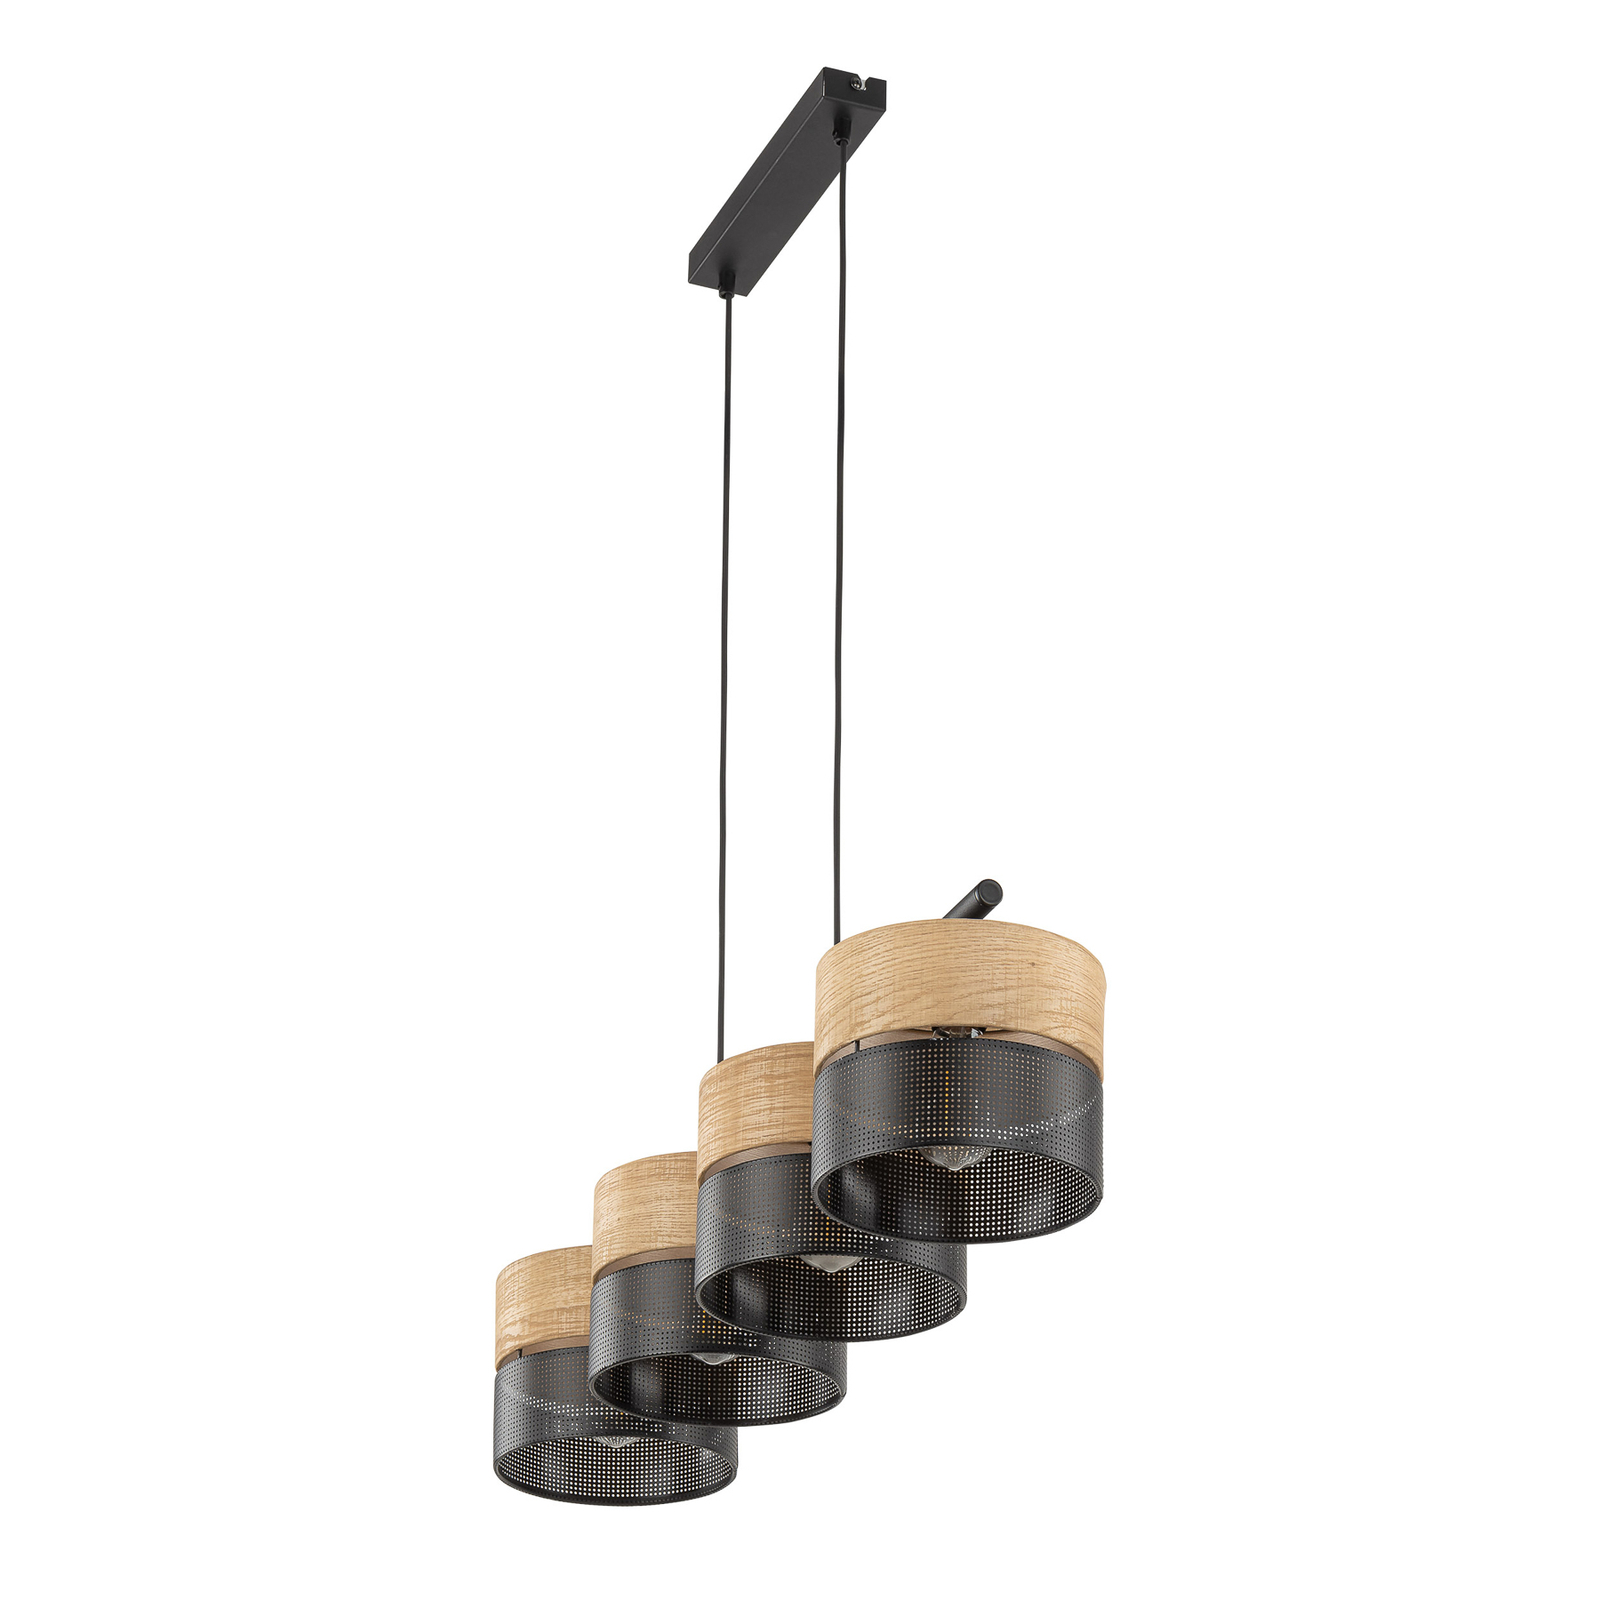 Lampa wisząca Nicol, czarny/efekt drewna, 94x20 cm 4-punktowa 4 x E27